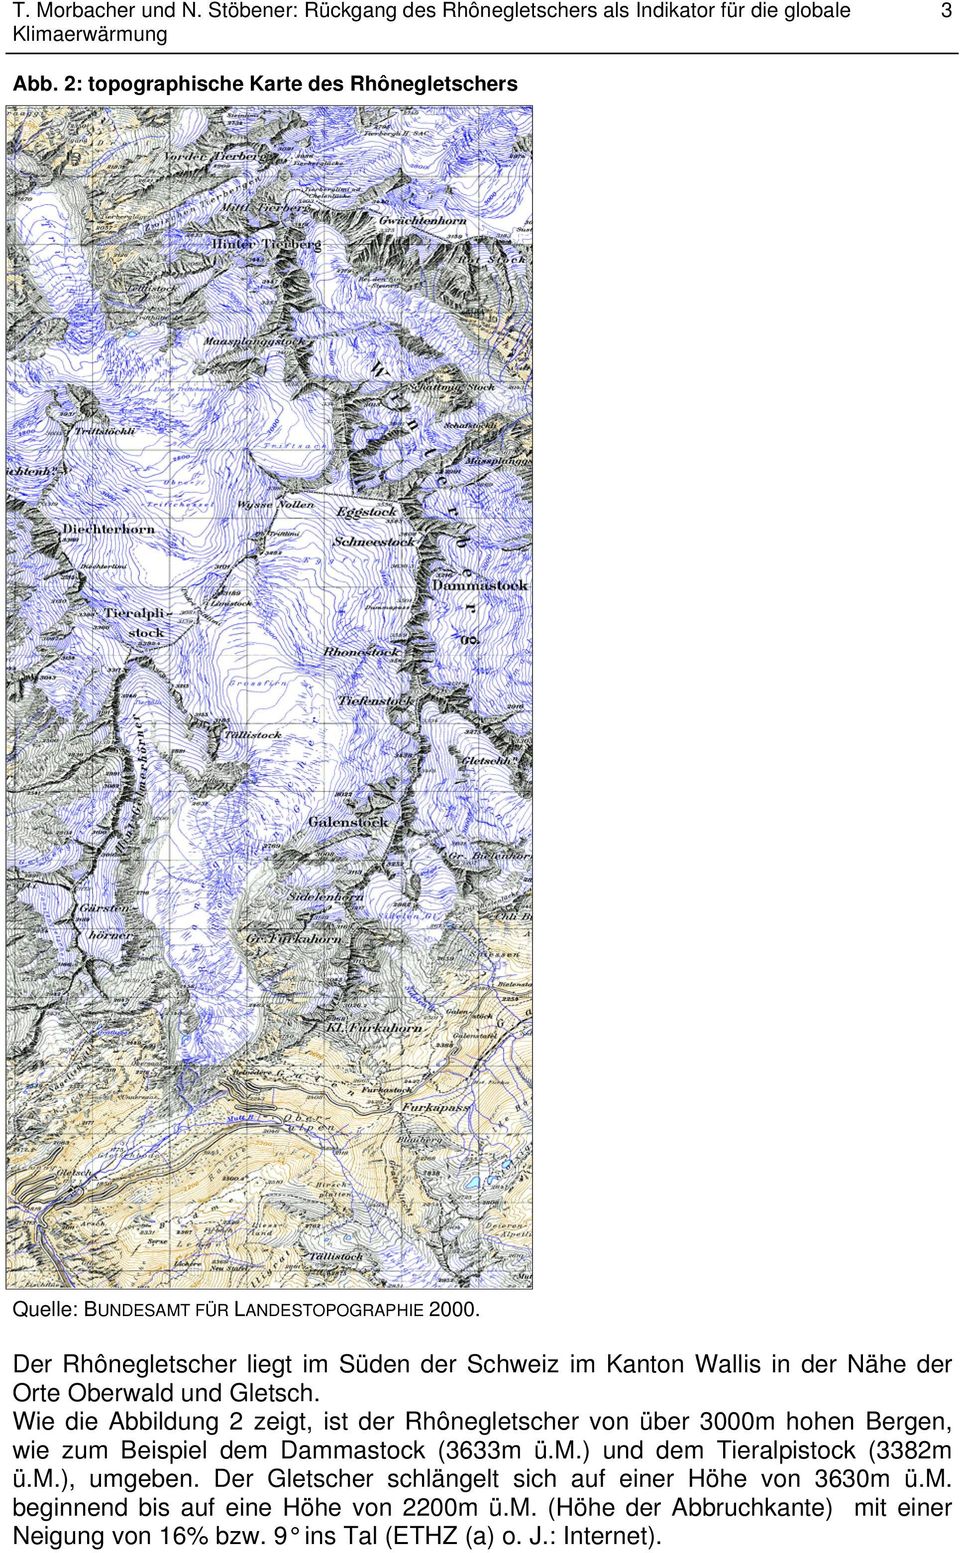 Wie die Abbildung 2 zeigt, ist der Rhônegletscher von über 3000m hohen Bergen, wie zum Beispiel dem Dammastock (3633m ü.m.) und dem Tieralpistock (3382m ü.